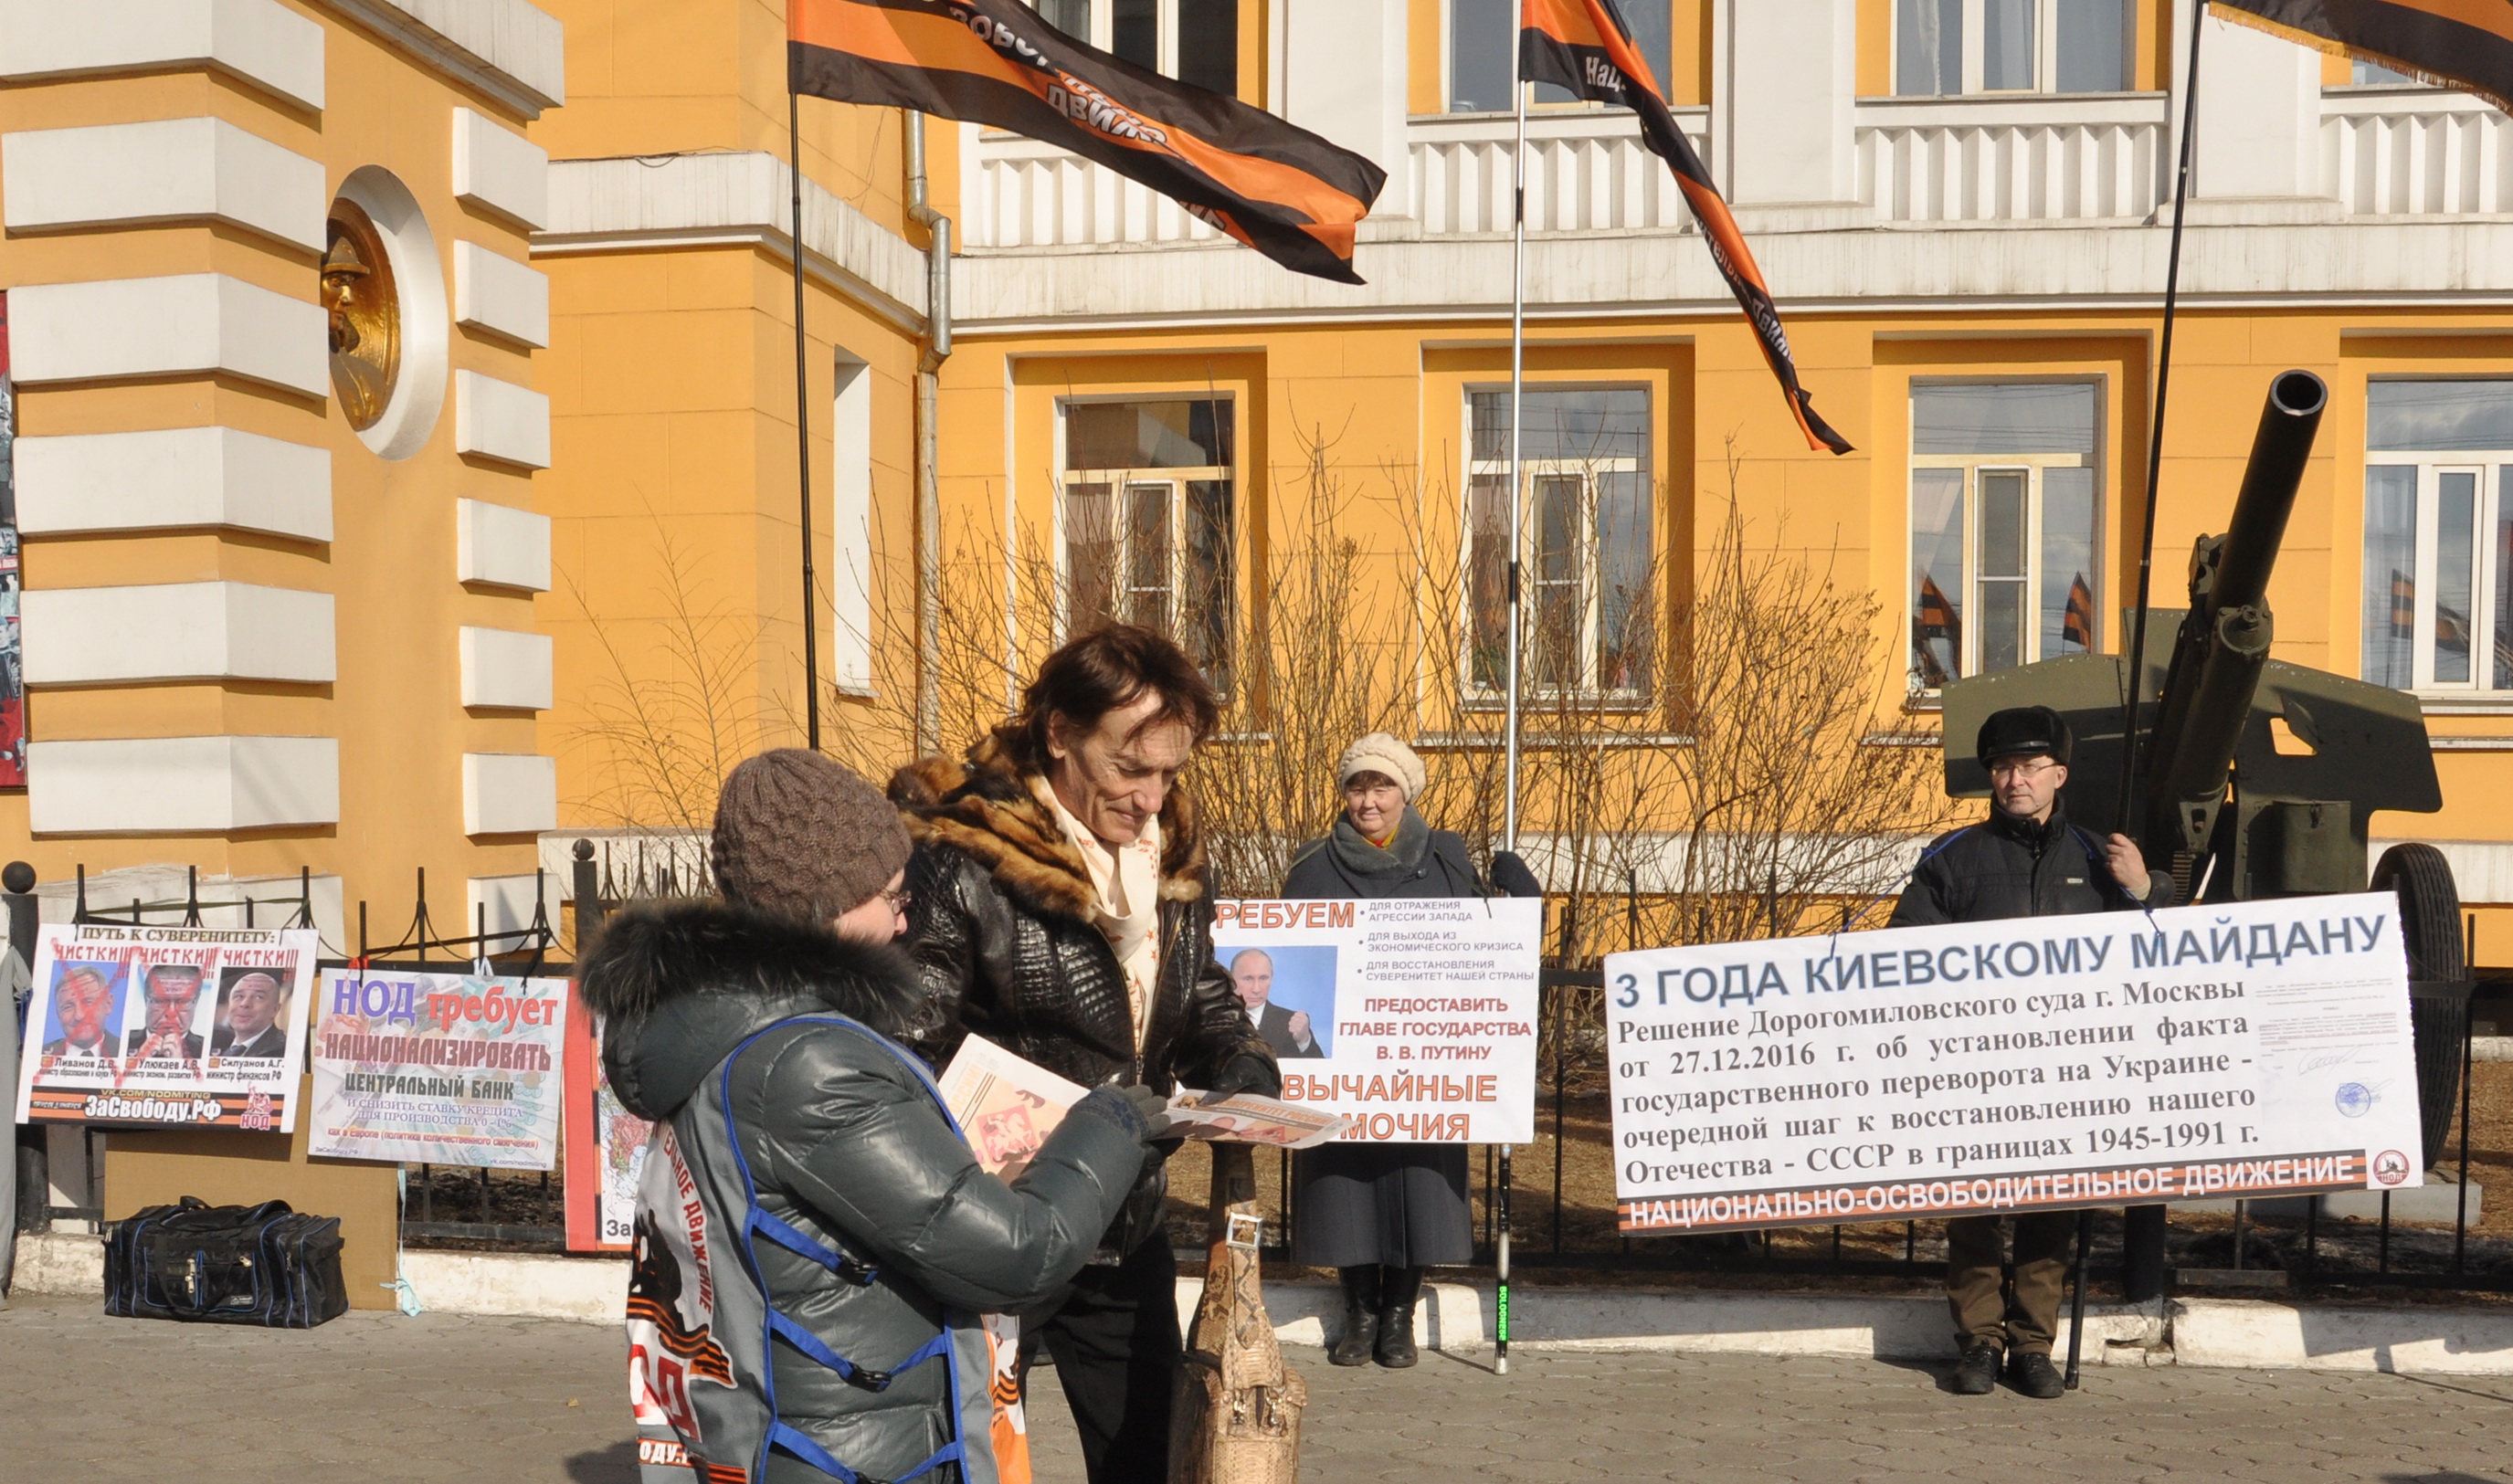 НОД в Чите провел пикет в поддержку Путина и за суверенитет РФ